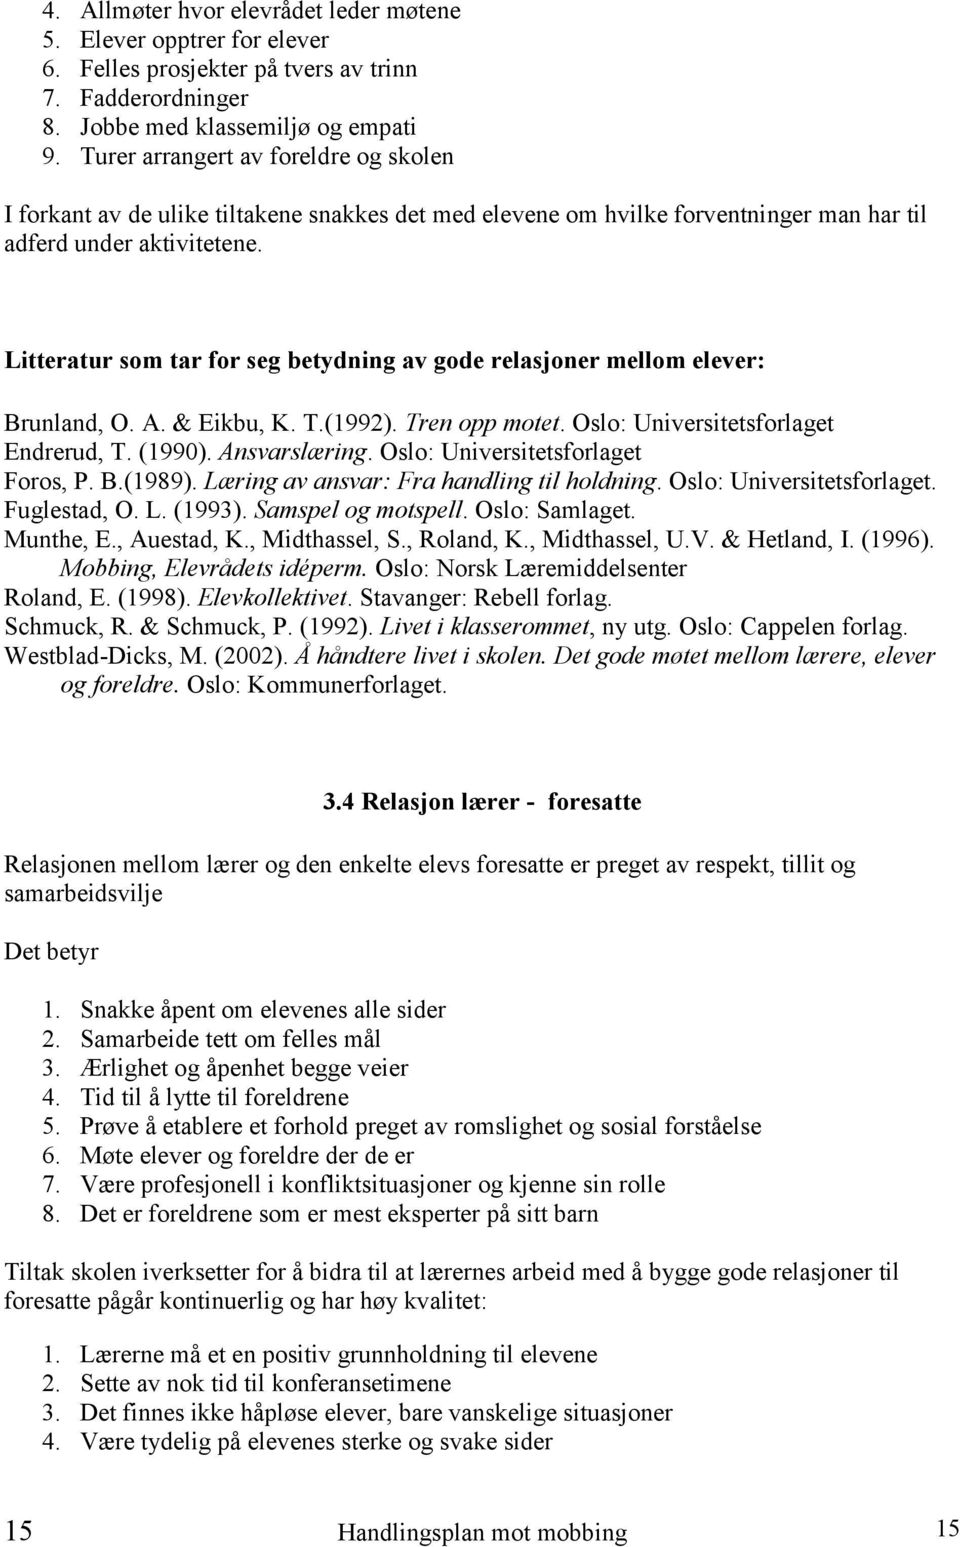 Litteratur som tar for seg betydning av gode relasjoner mellom elever: Brunland, O. A. & Eikbu, K. T.(1992). Tren opp motet. Oslo: Universitetsforlaget Endrerud, T. (1990). Ansvarslæring.